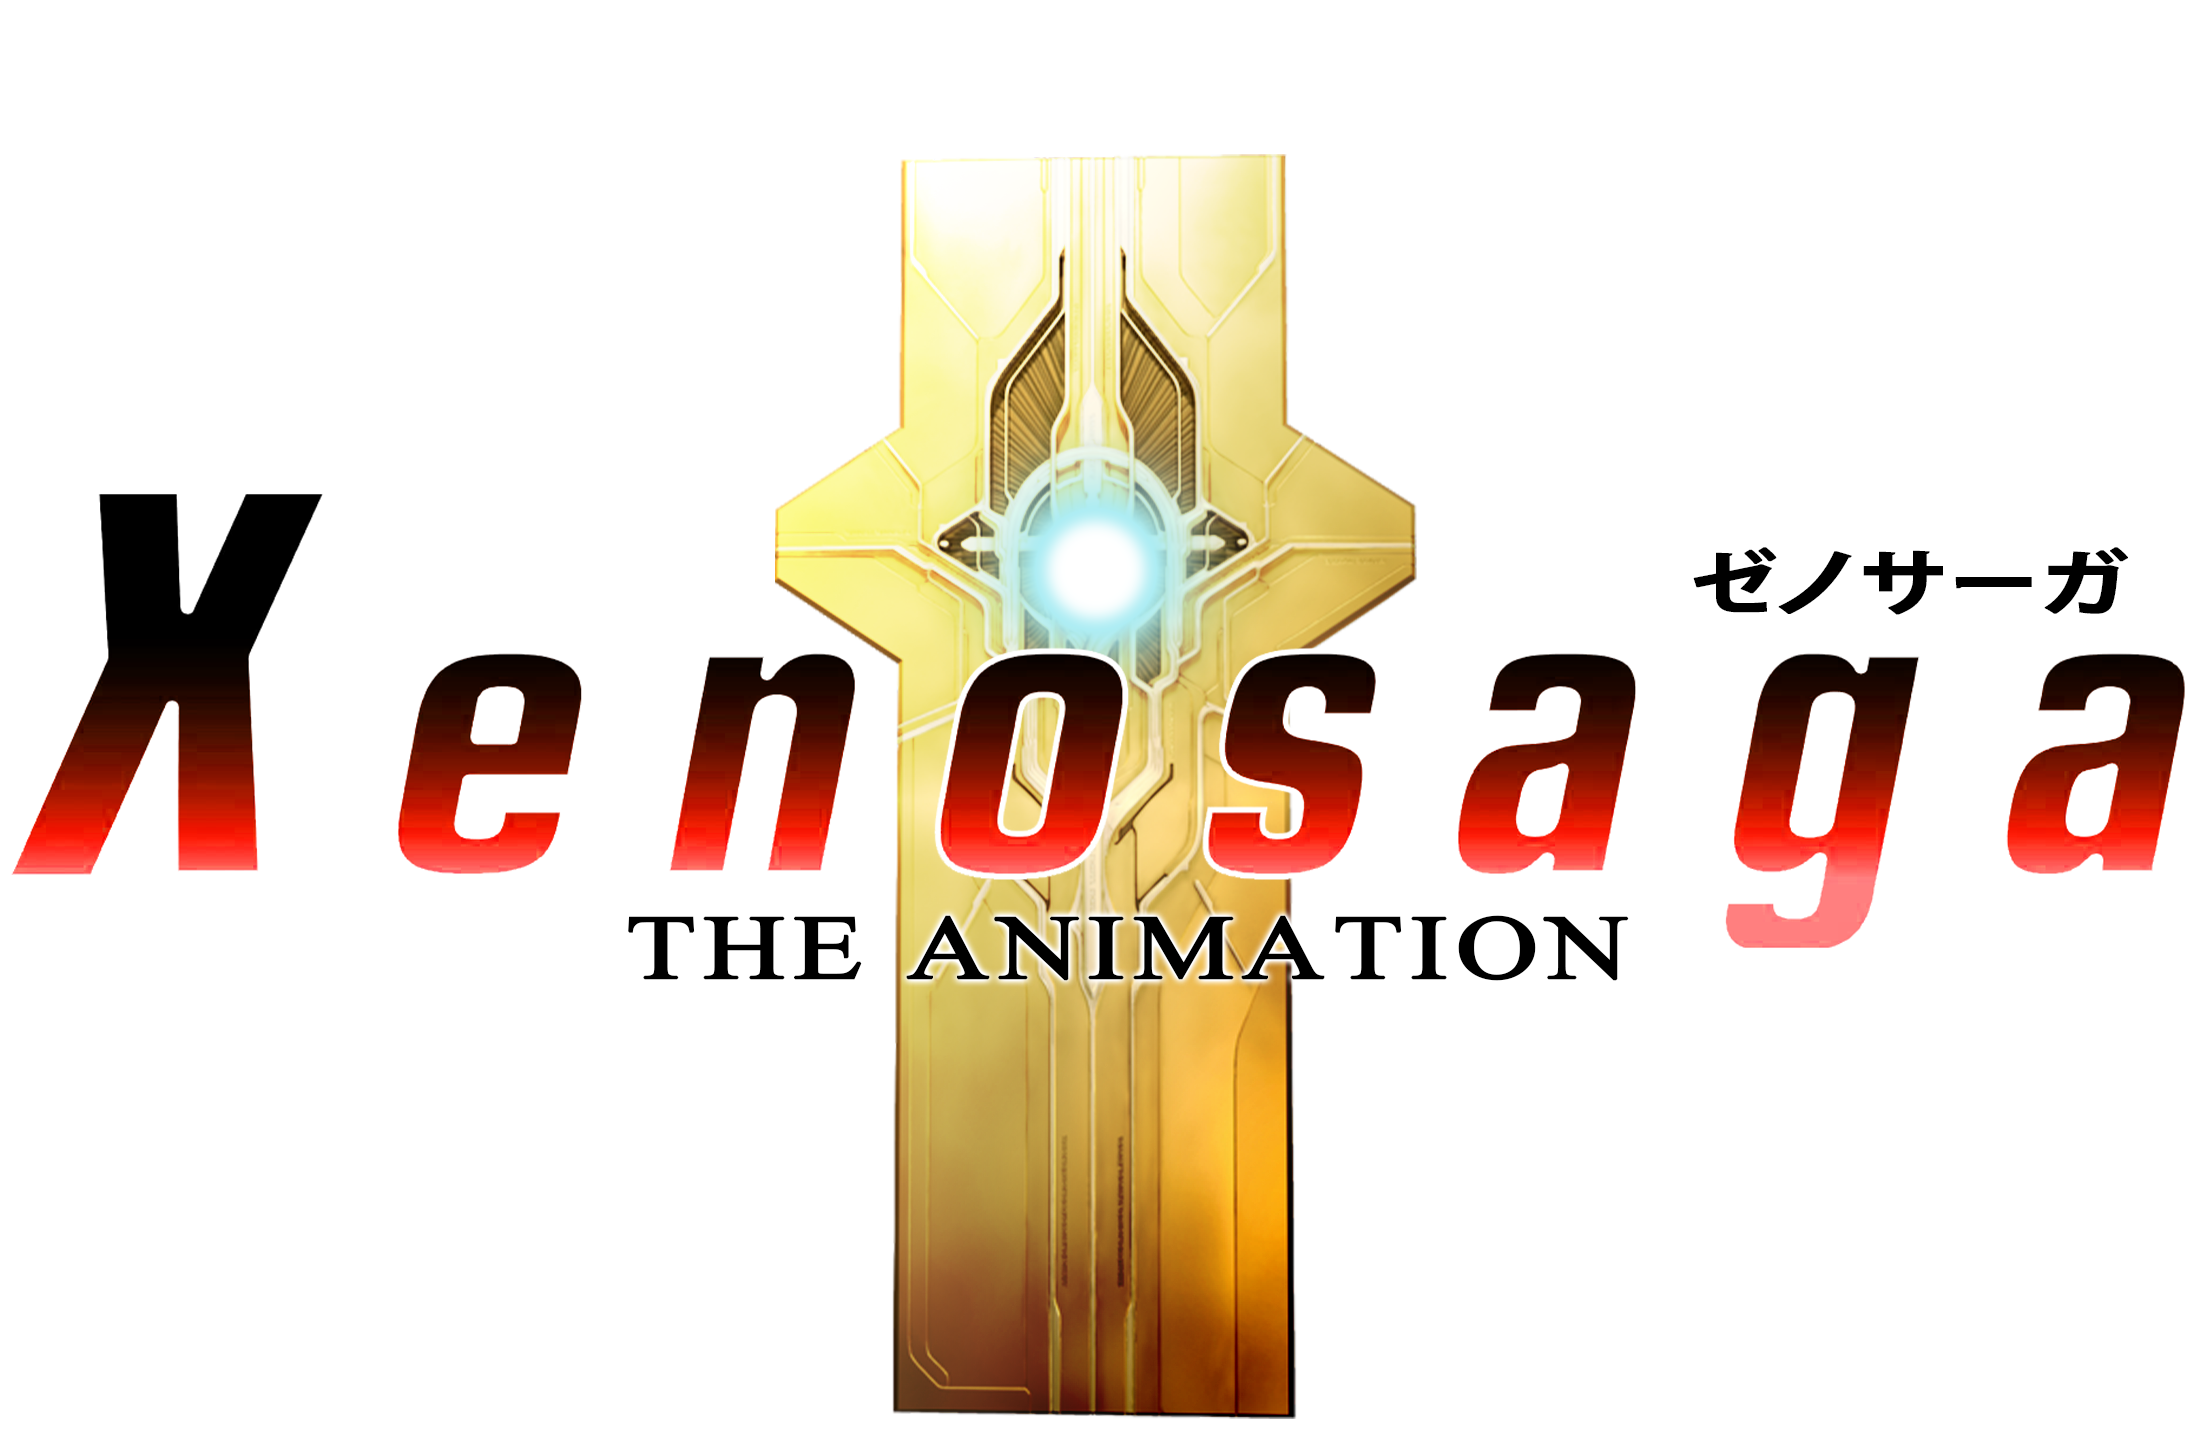 Xenosaga The Animation Logo.png